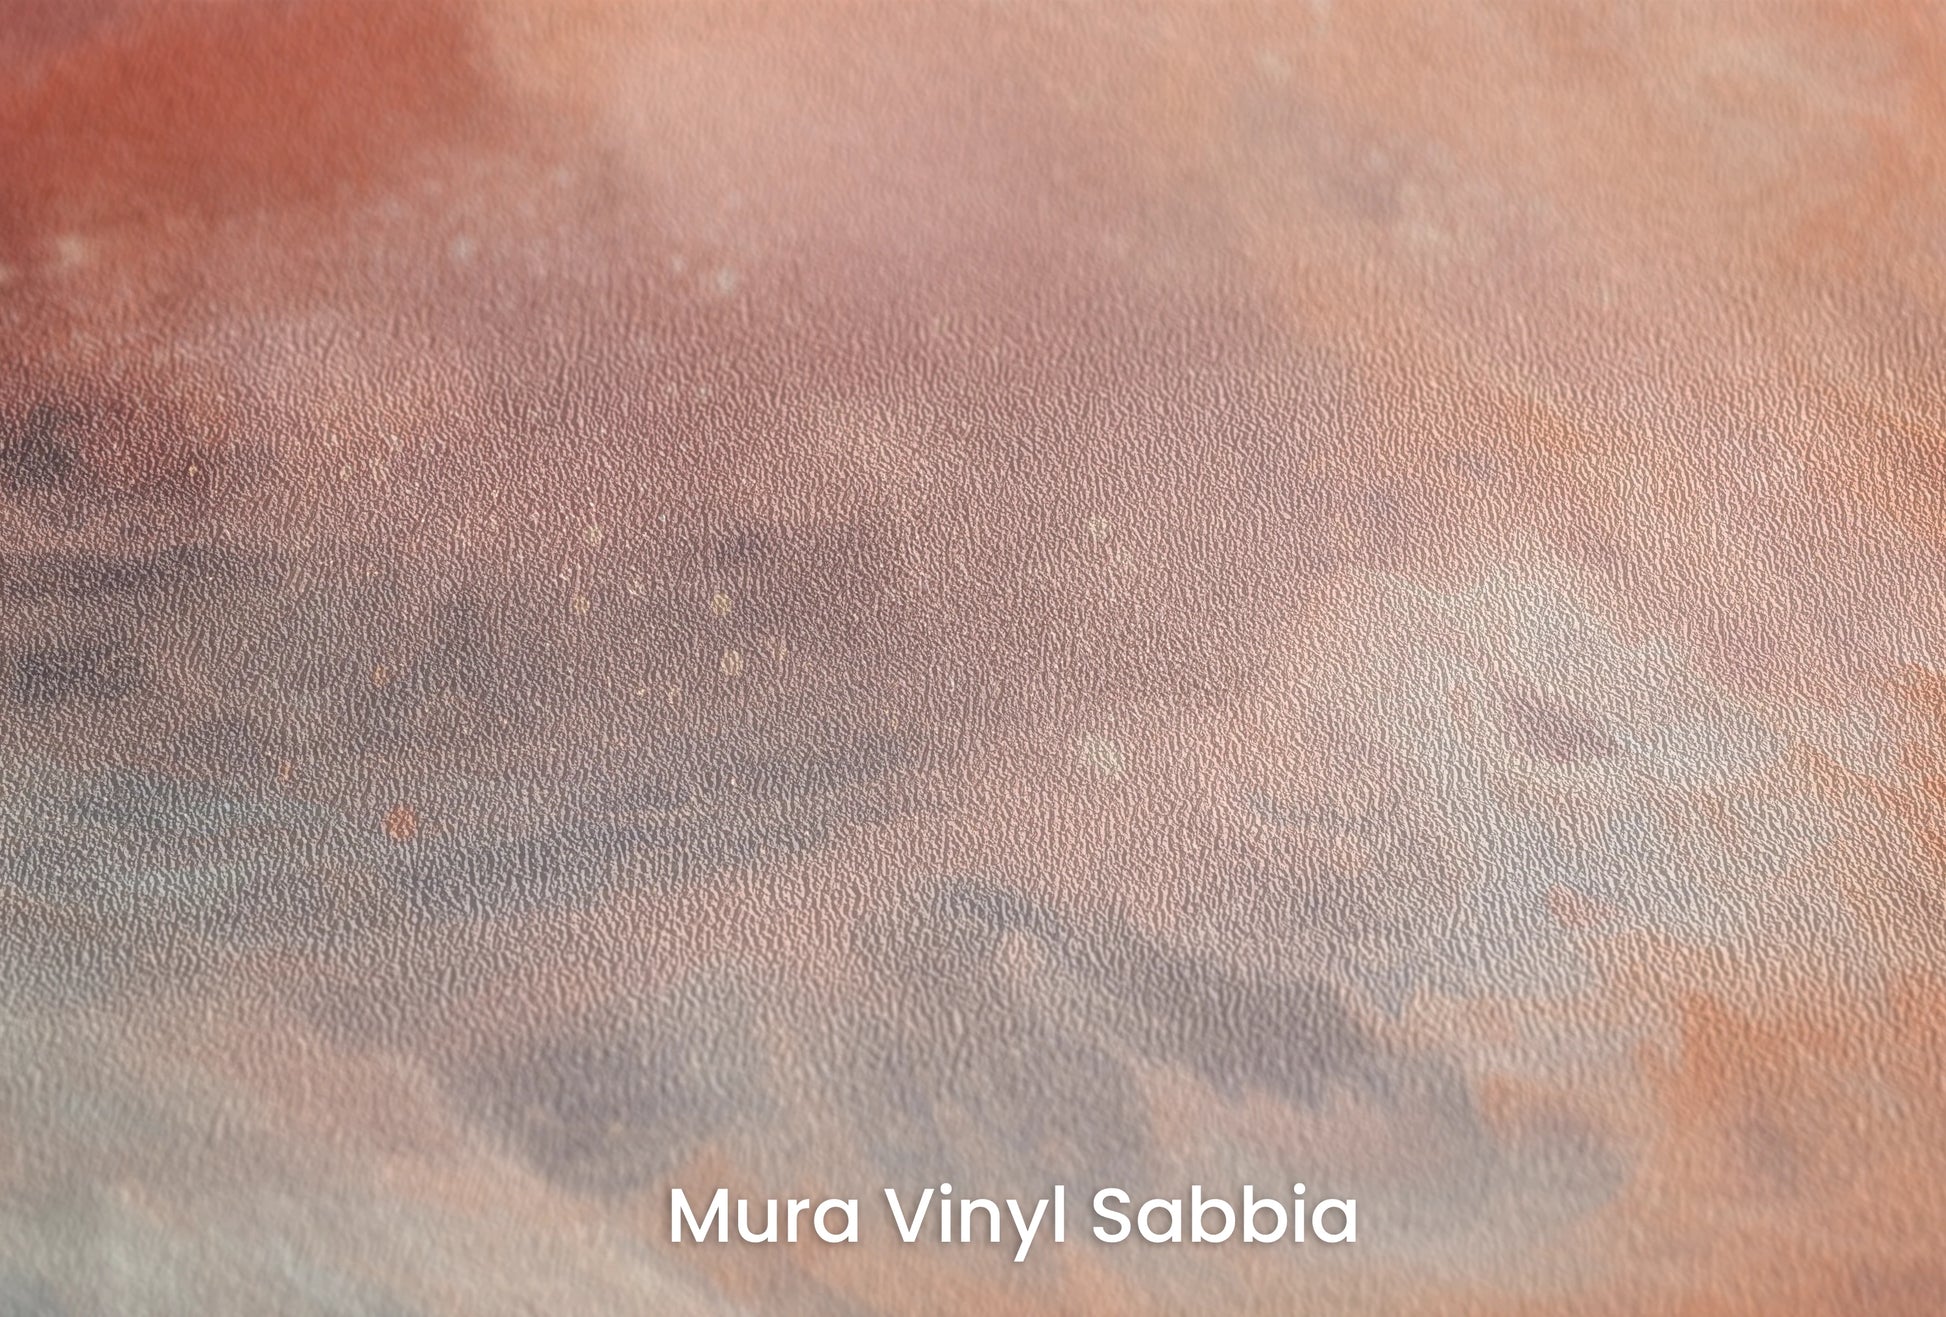 Zbliżenie na artystyczną fototapetę o nazwie Monolith's Shadow na podłożu Mura Vinyl Sabbia struktura grubego ziarna piasku.